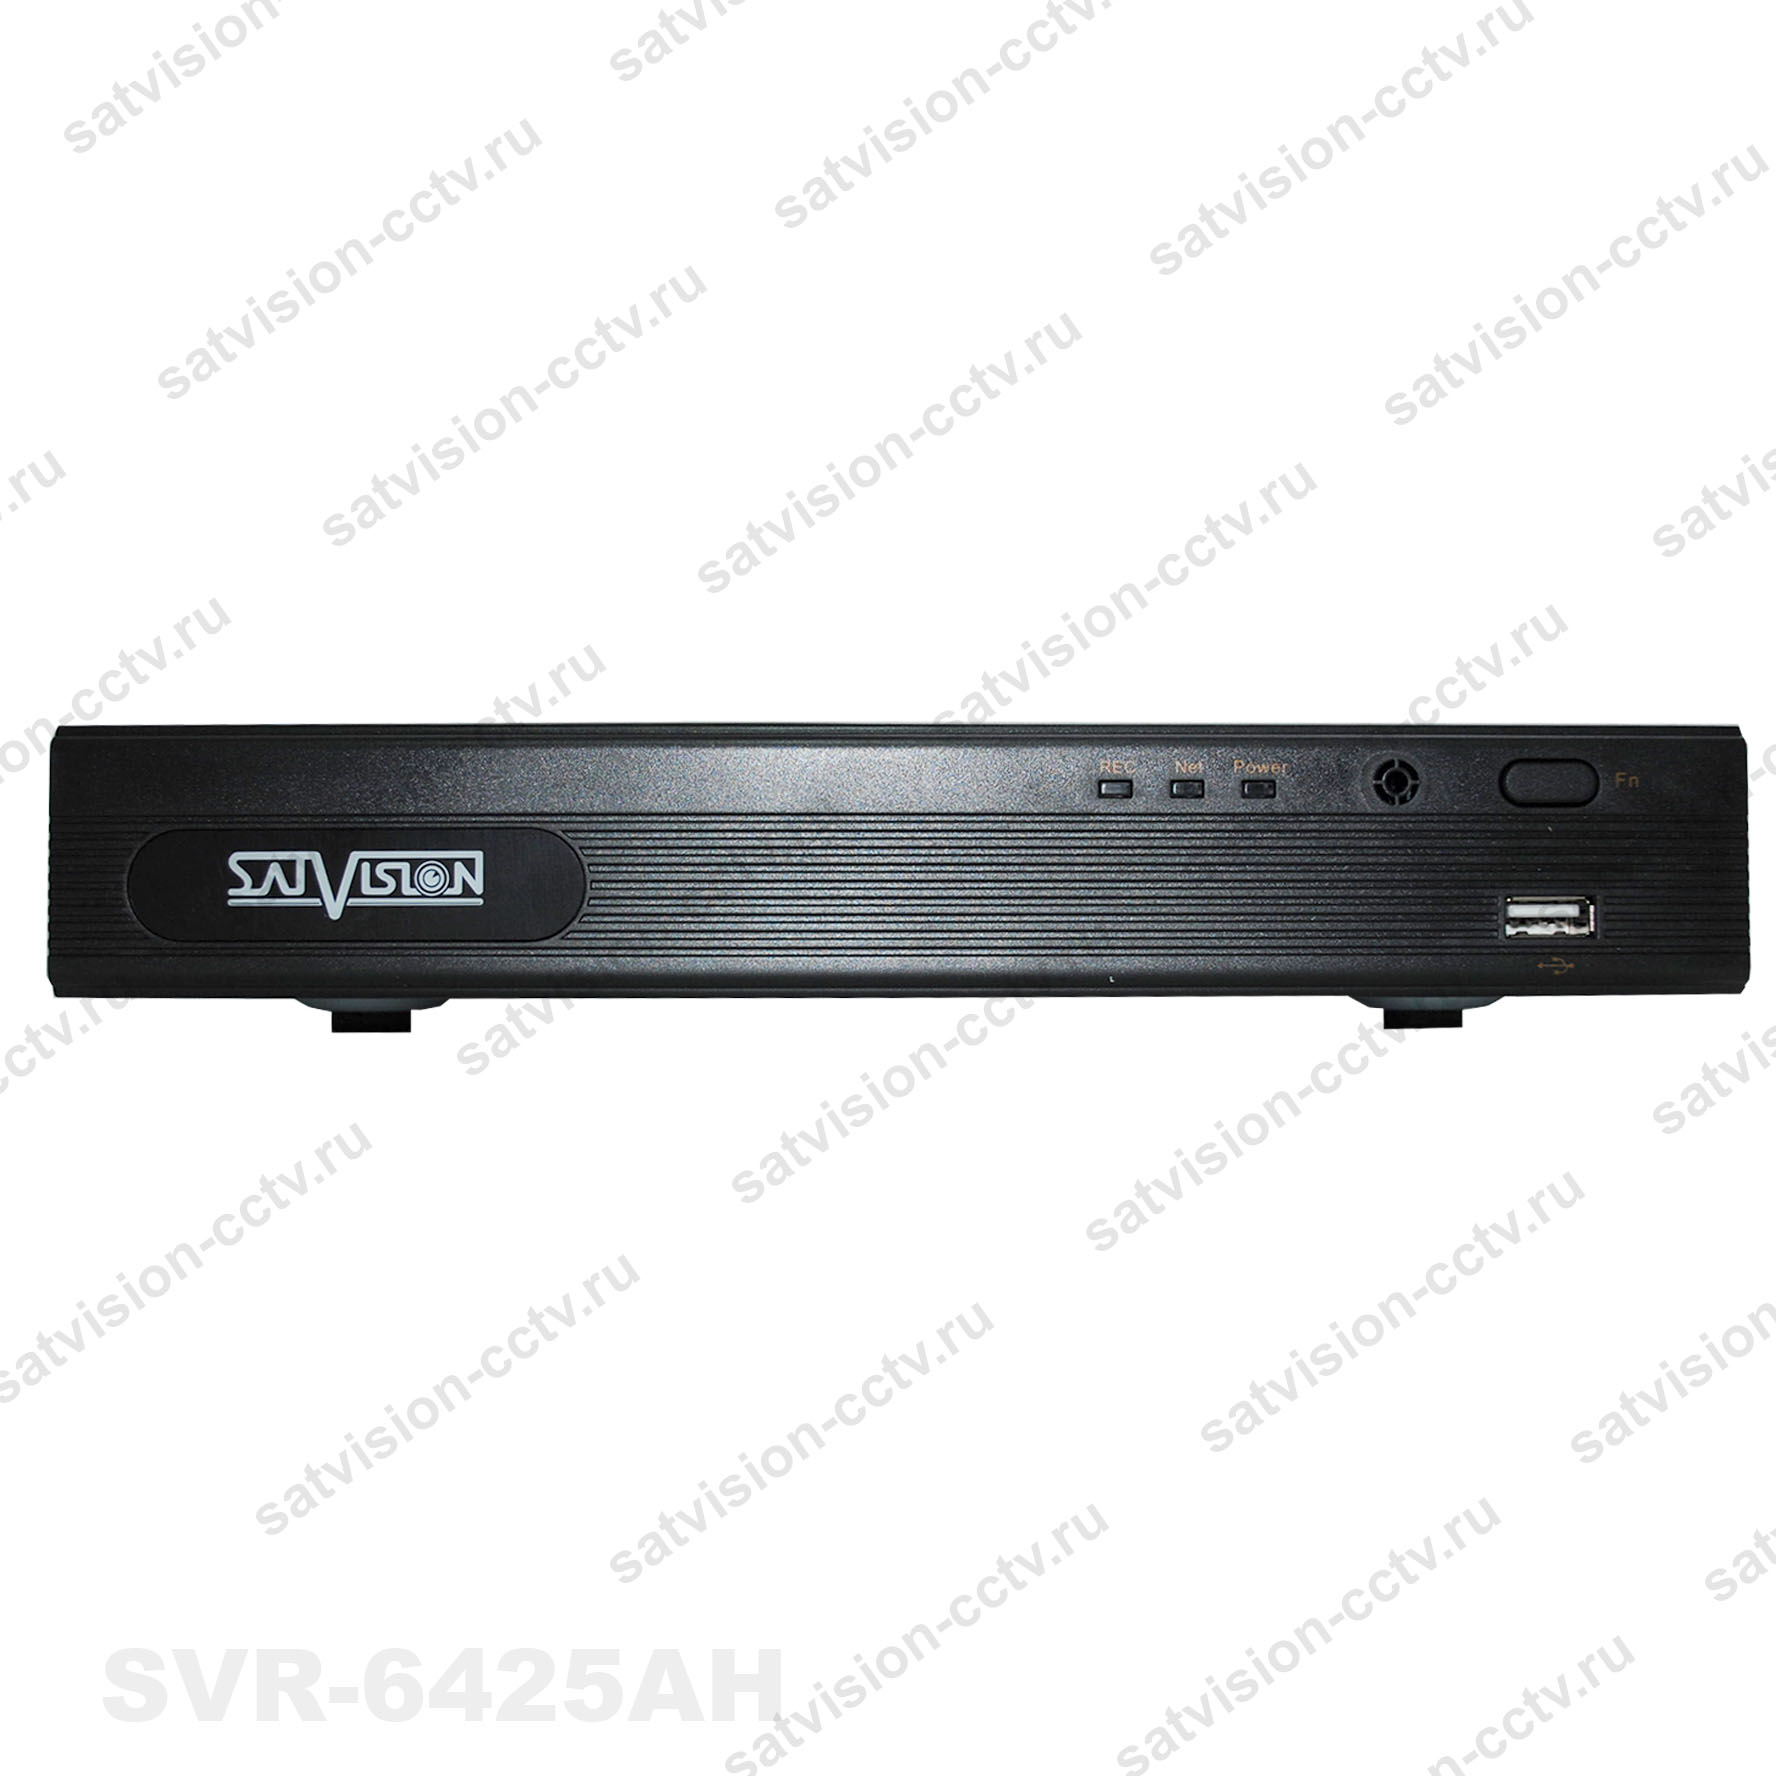 SVR-8115N 8-    , 8AHD*1080N-120/+4IP*1080p, !